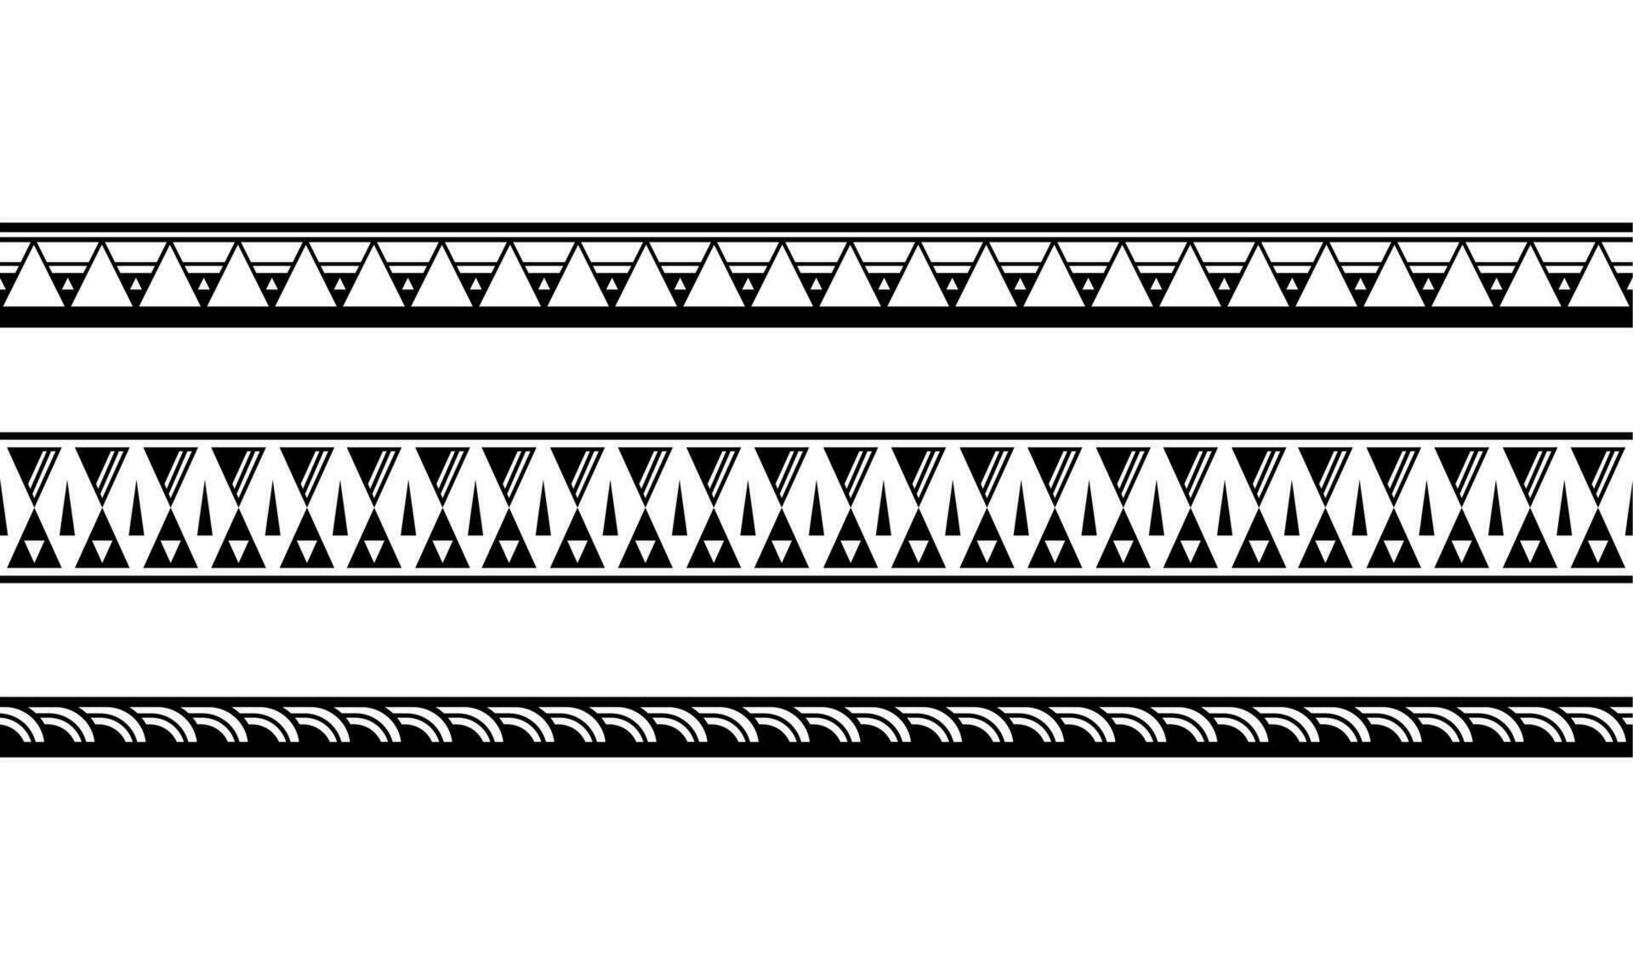 ensemble de bordure de bracelets de tatouage polynésiens maoris. vecteur de modèle sans couture de manche tribal.